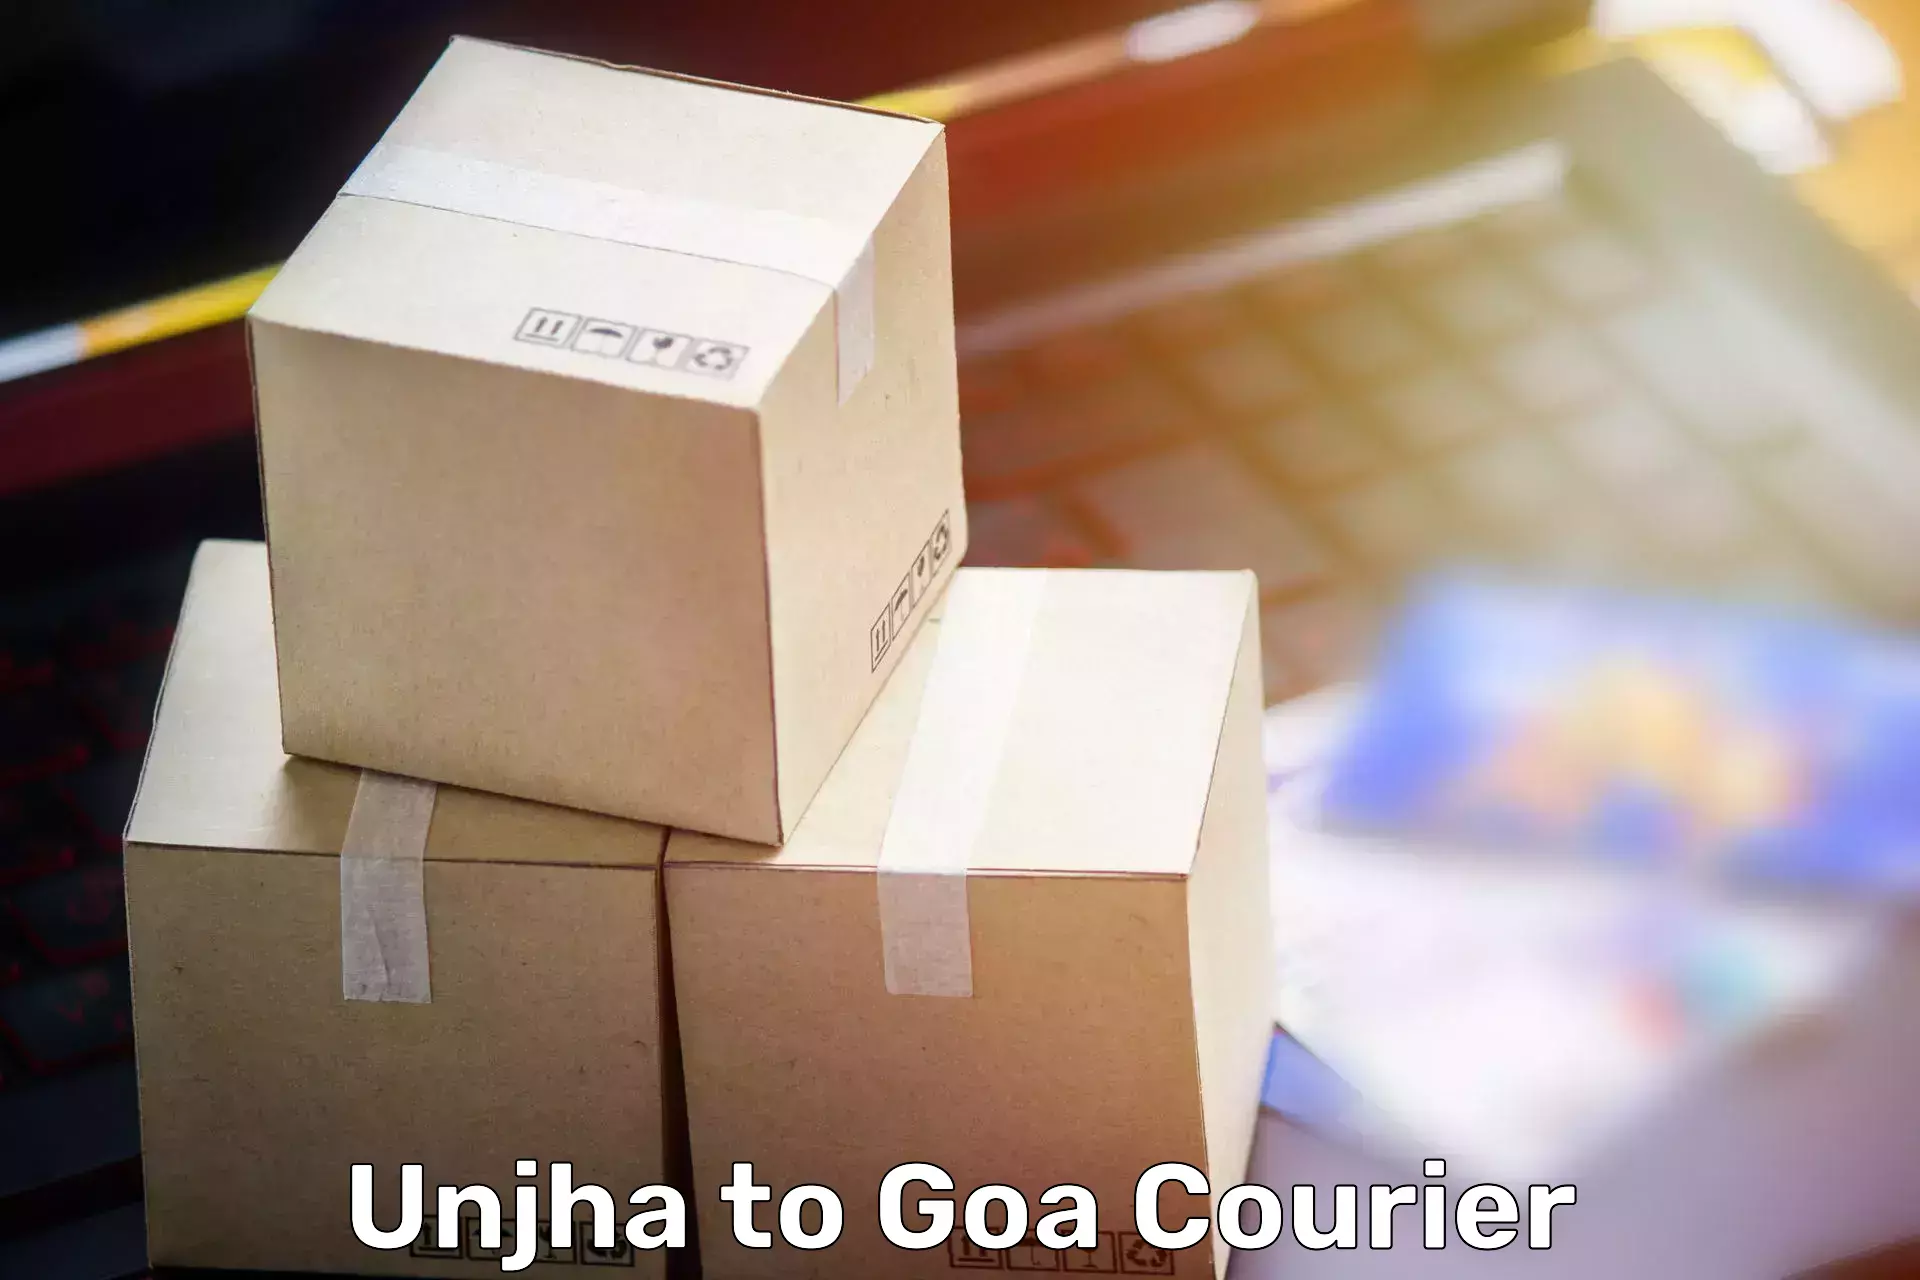 Furniture delivery service Unjha to Goa